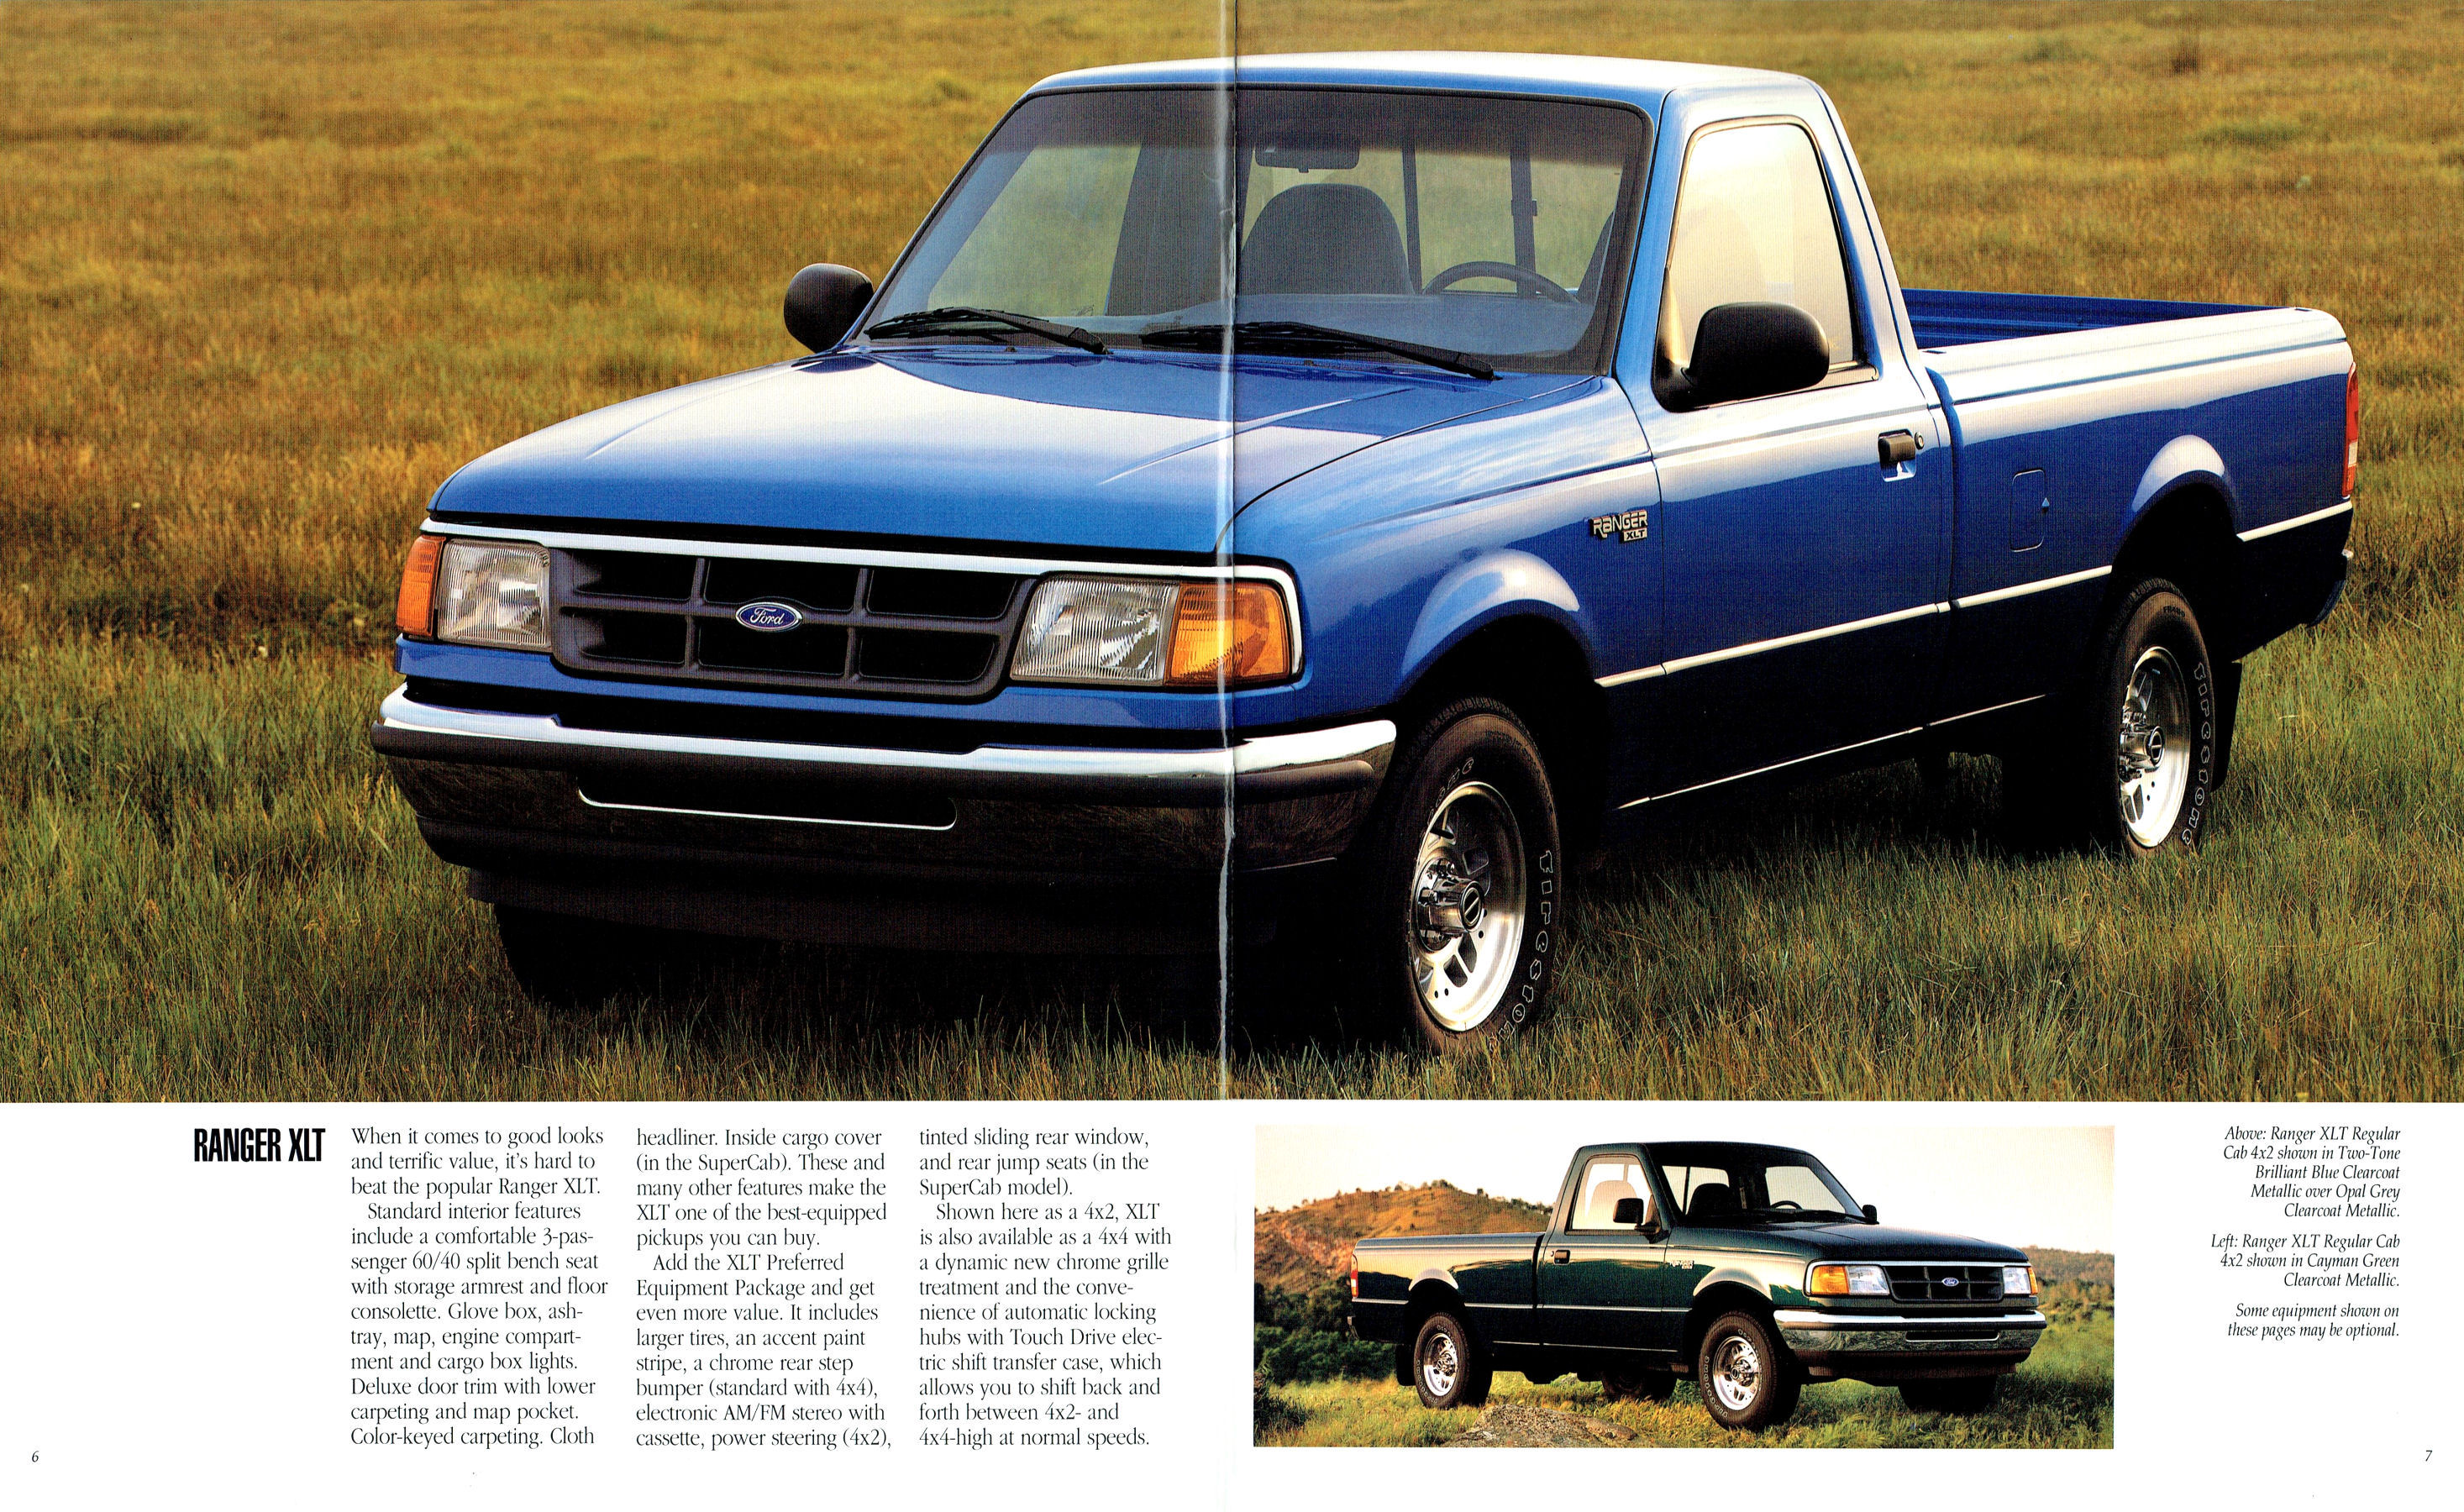 1994 Ford Ranger Pickup-06-07